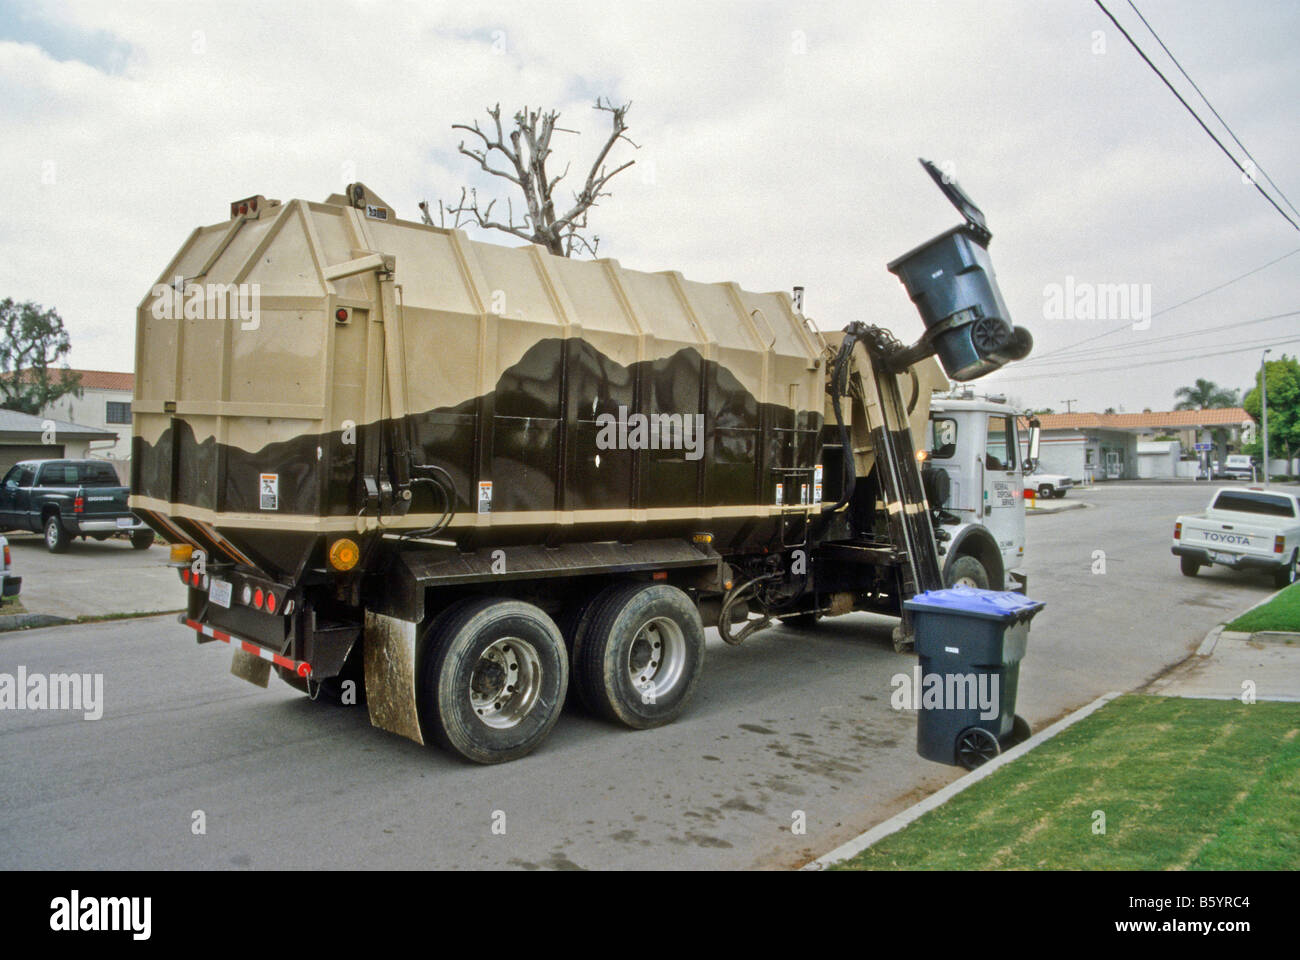 Camion Poubelle utilise bras mécanique pour déverser poubelles Photo Stock  - Alamy